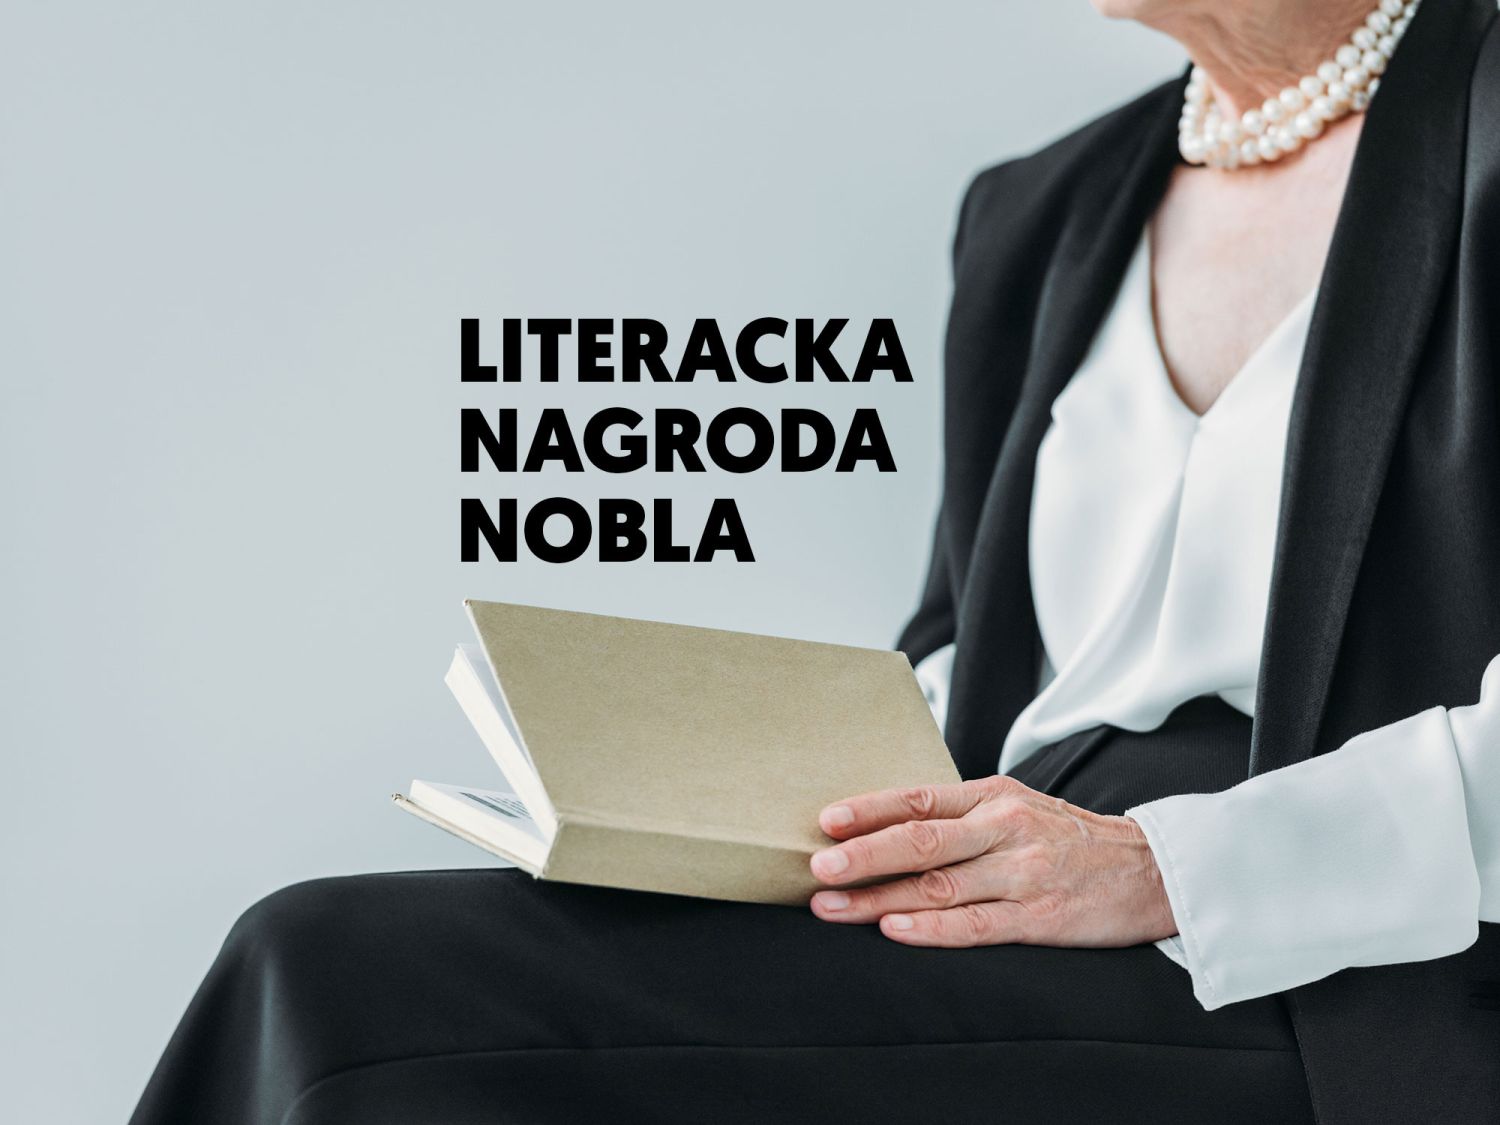 Literacka nagroda Nobla – jedno z największych wyróżnień dla pisarzy. Co musisz o niej wiedzieć?